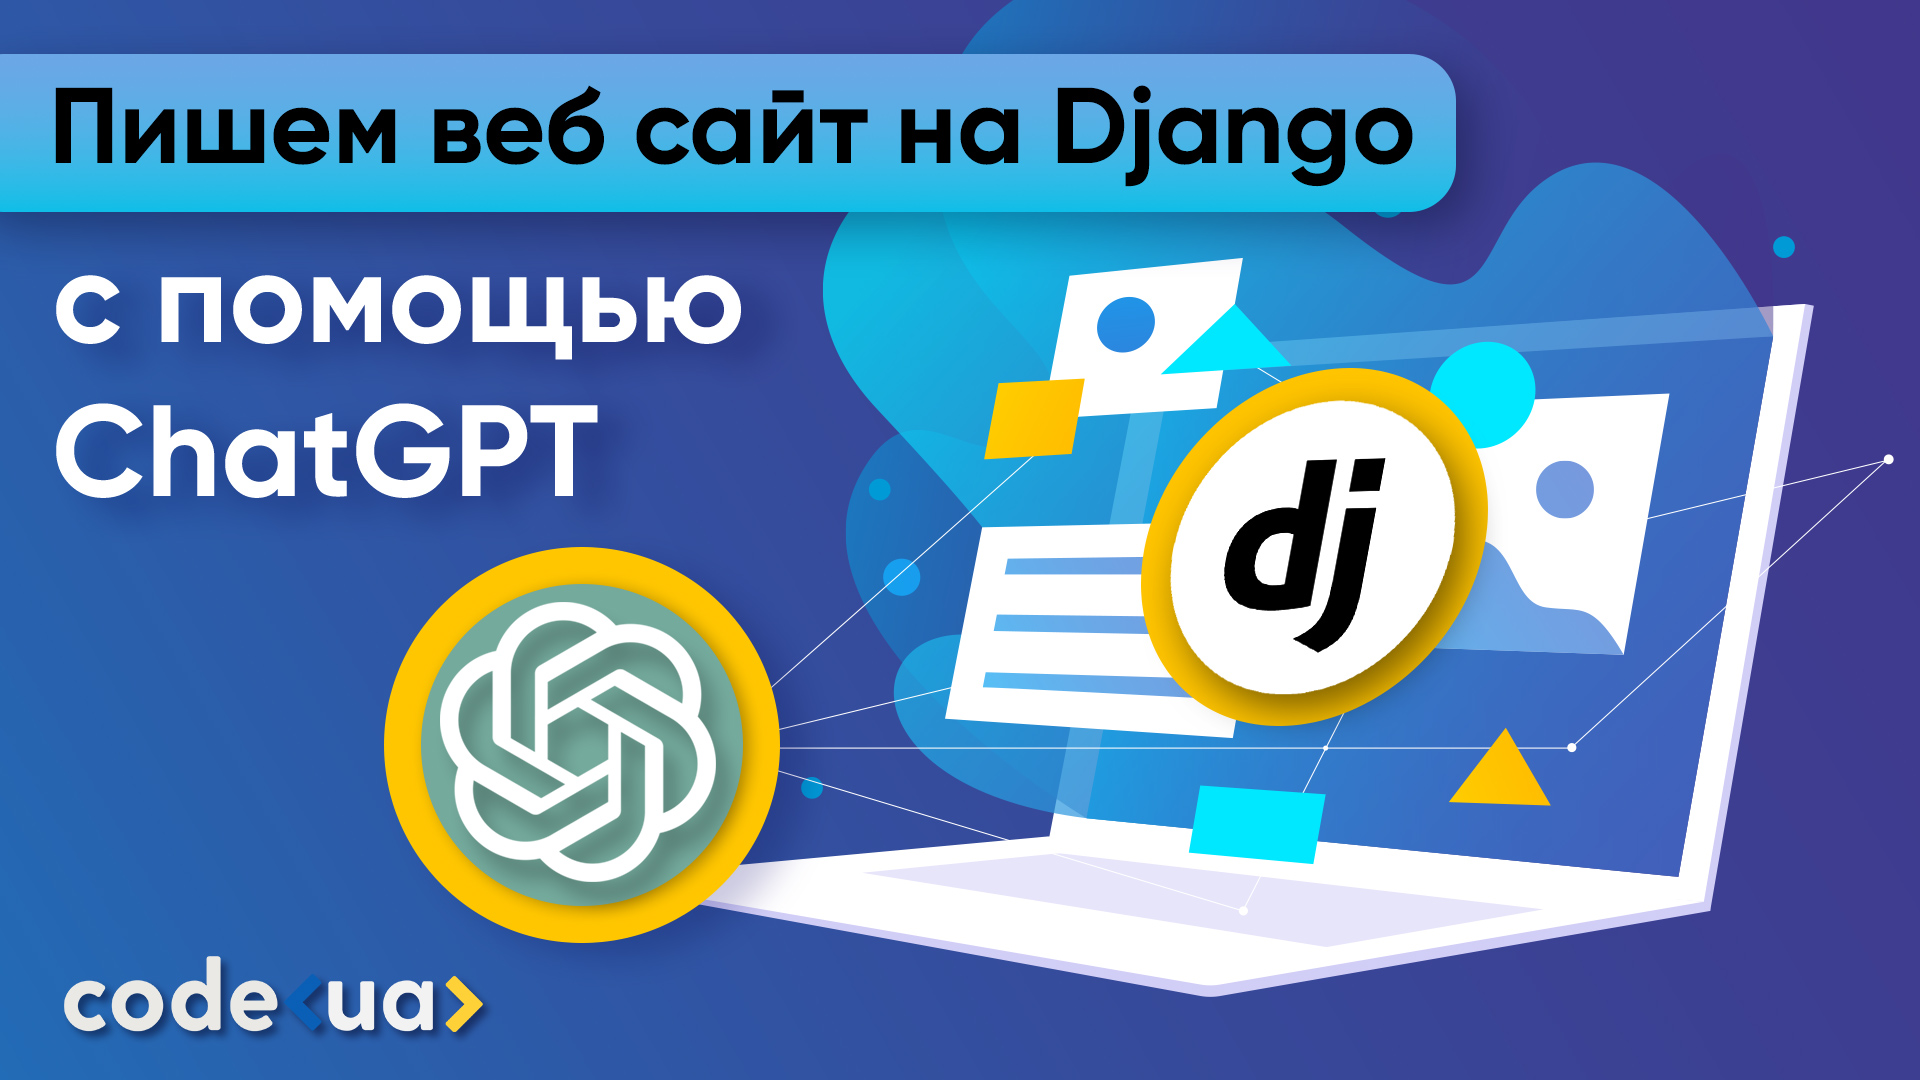 Обложка вебинара Пишем веб-сайт на Django при помощи ChatGPT